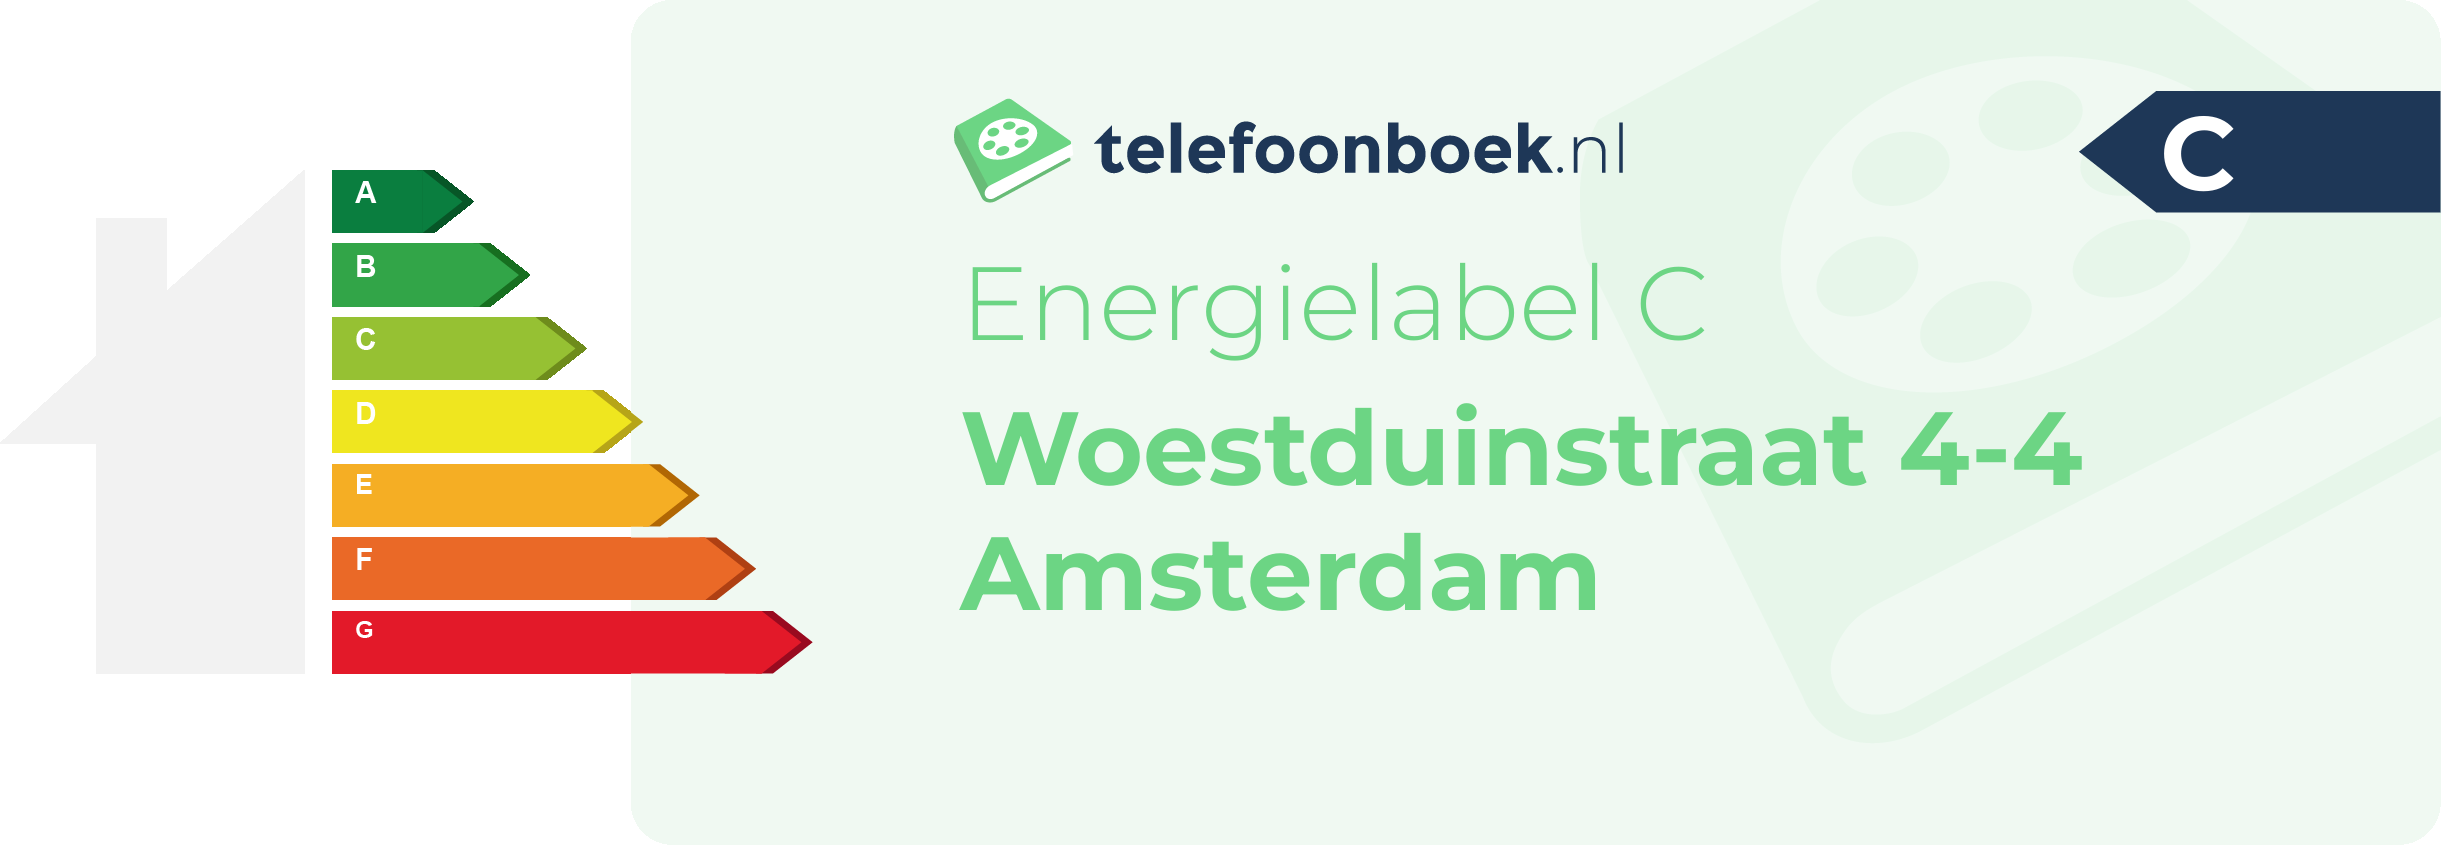 Energielabel Woestduinstraat 4-4 Amsterdam